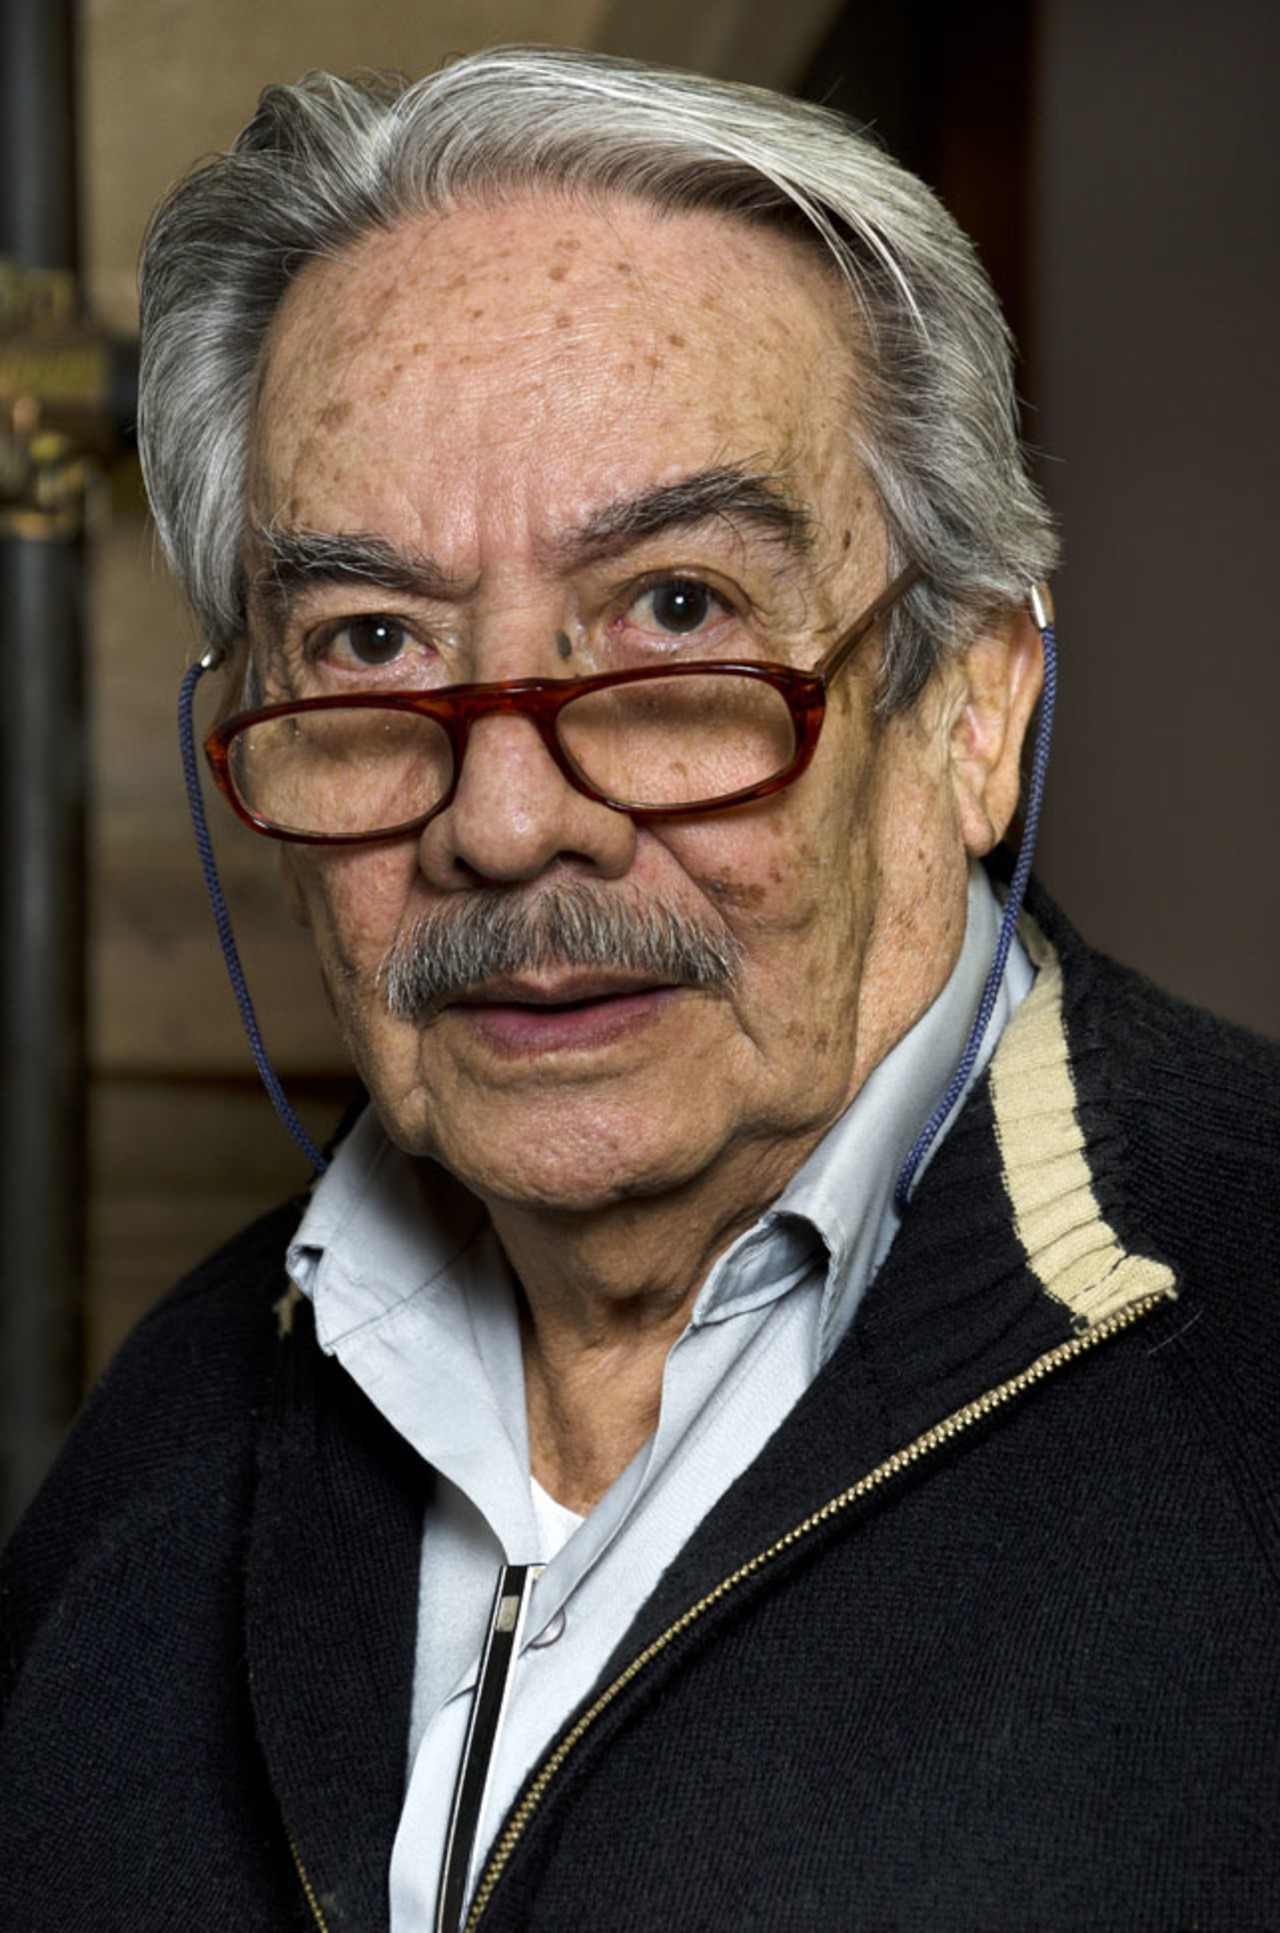 Luto. Muere el maestro Jesús Gallardo, artista plástico y promotor cultural de grandes instituciones y proyectos.